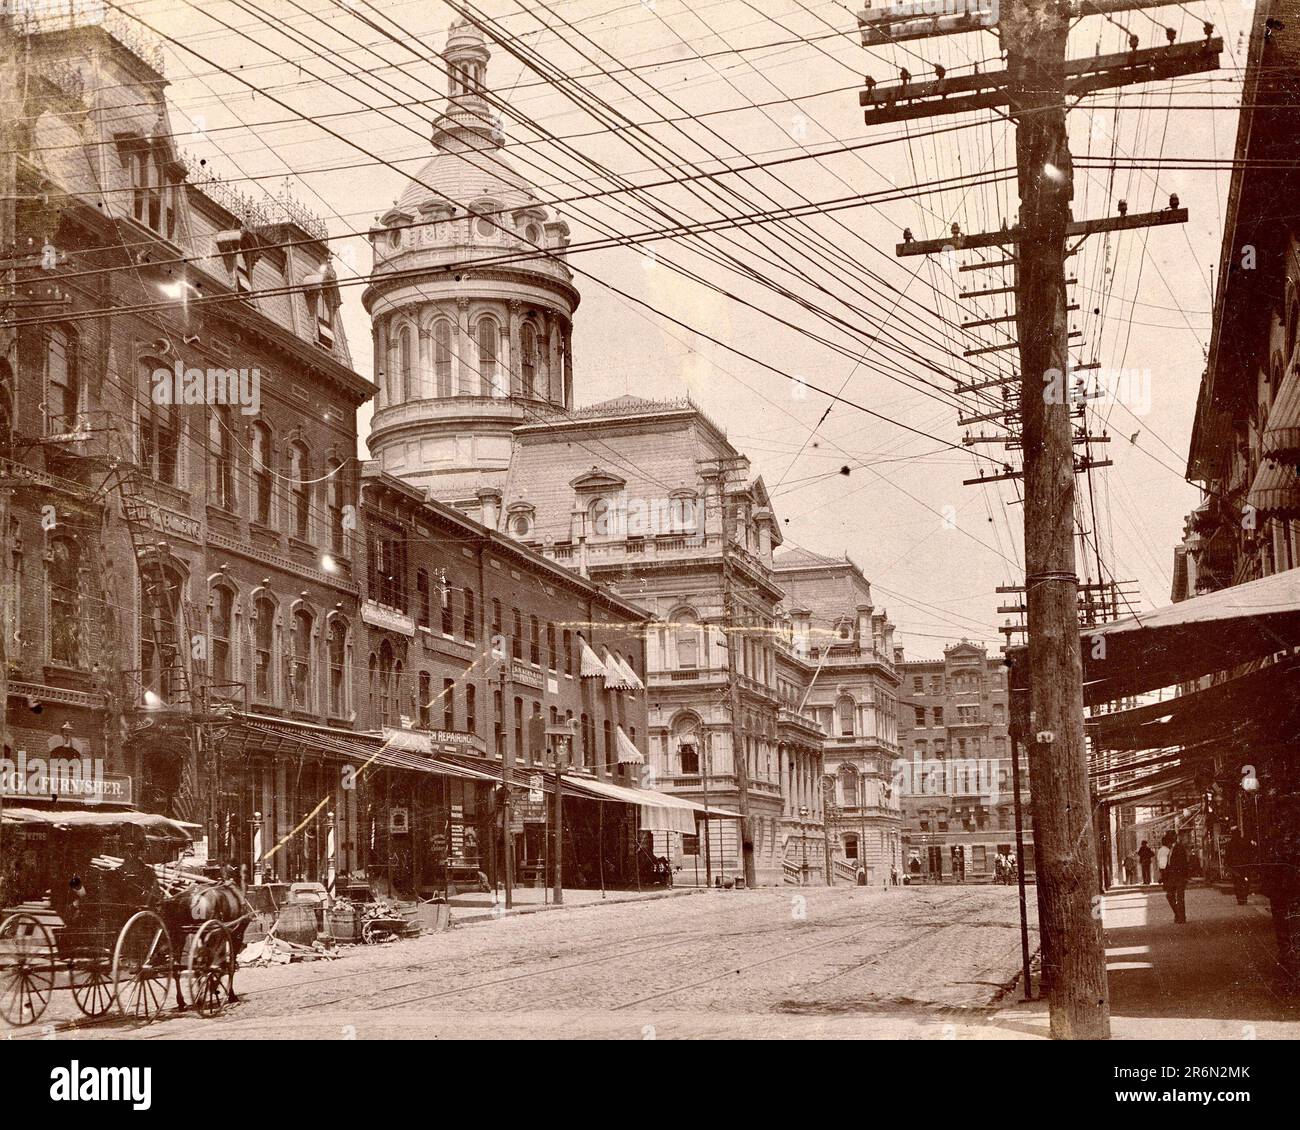 Baltimore vers 1900, Baltimore Maryland, histoire de Baltimore, tournant du siècle Banque D'Images